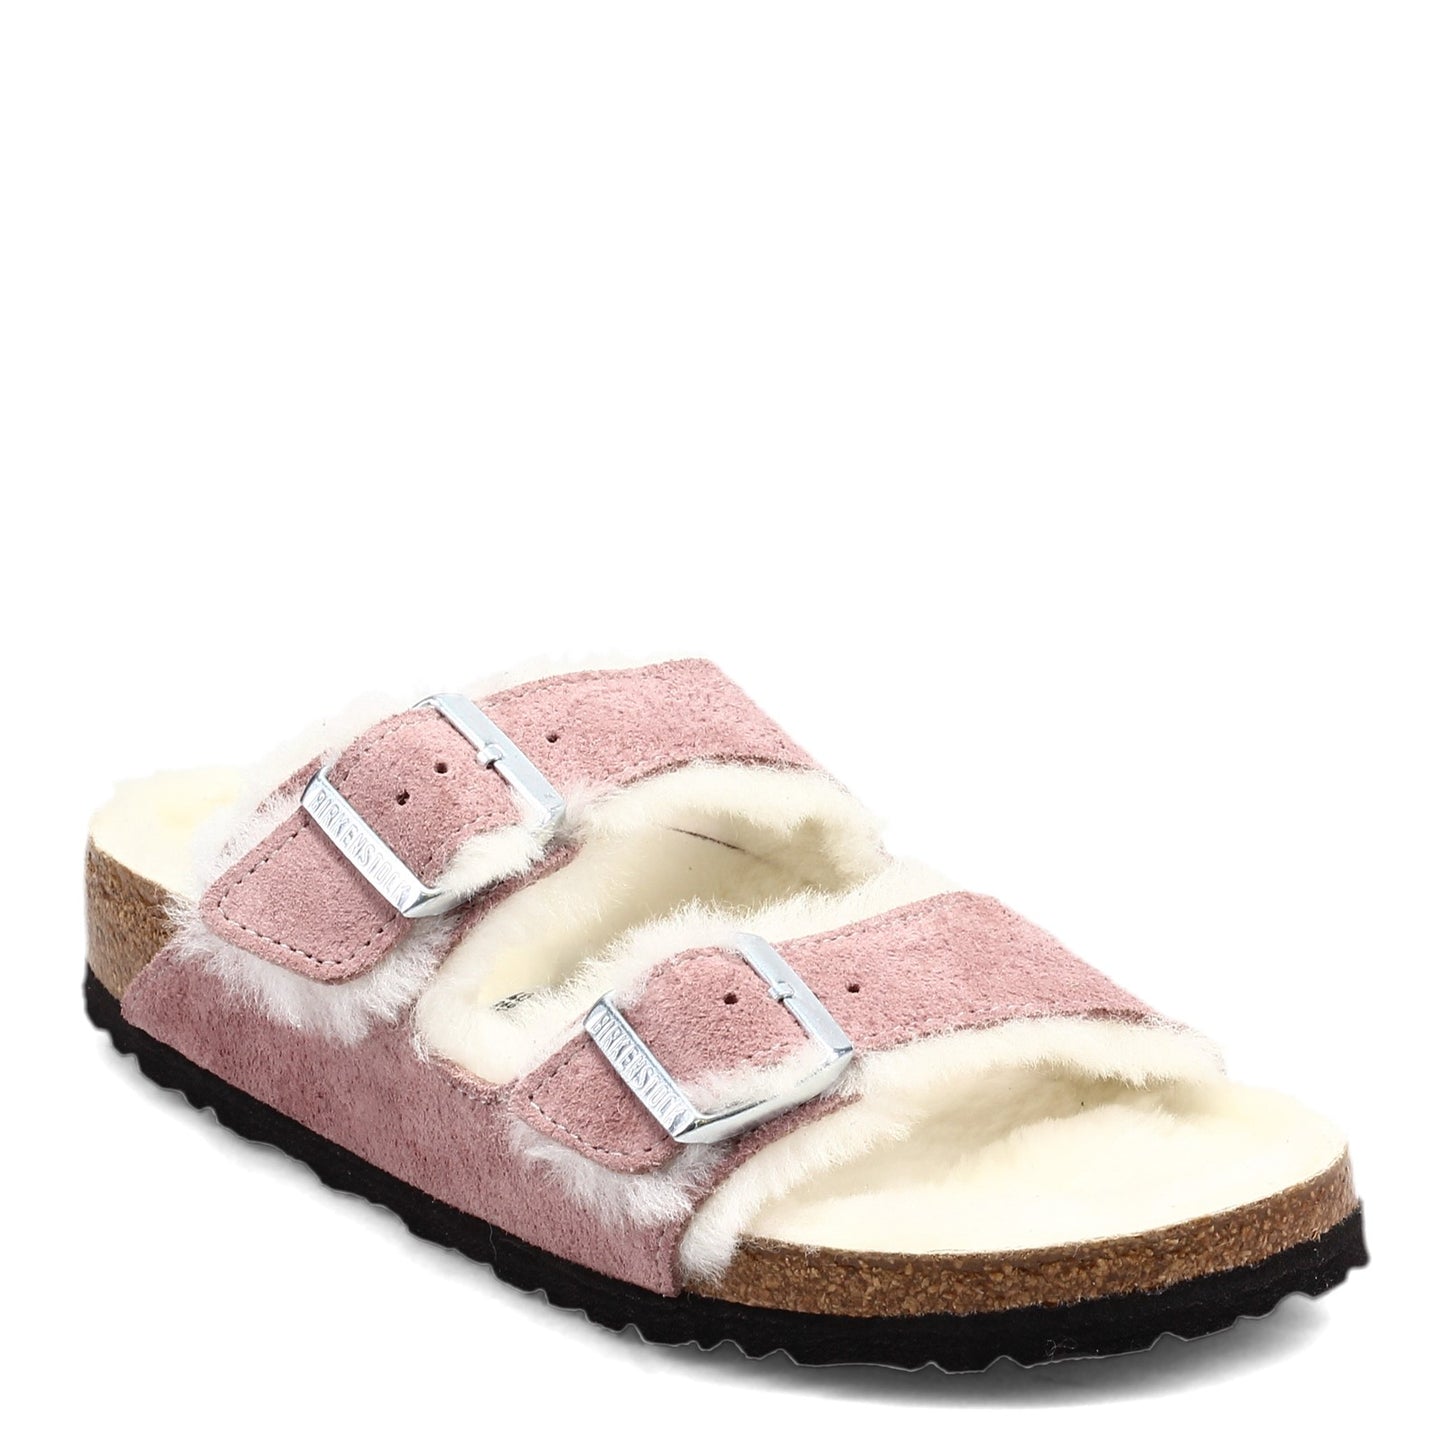 Peltz Shoes  Women's Birkenstock Arizona Shearling Lined Sandal LAVENDER 1017 560 N